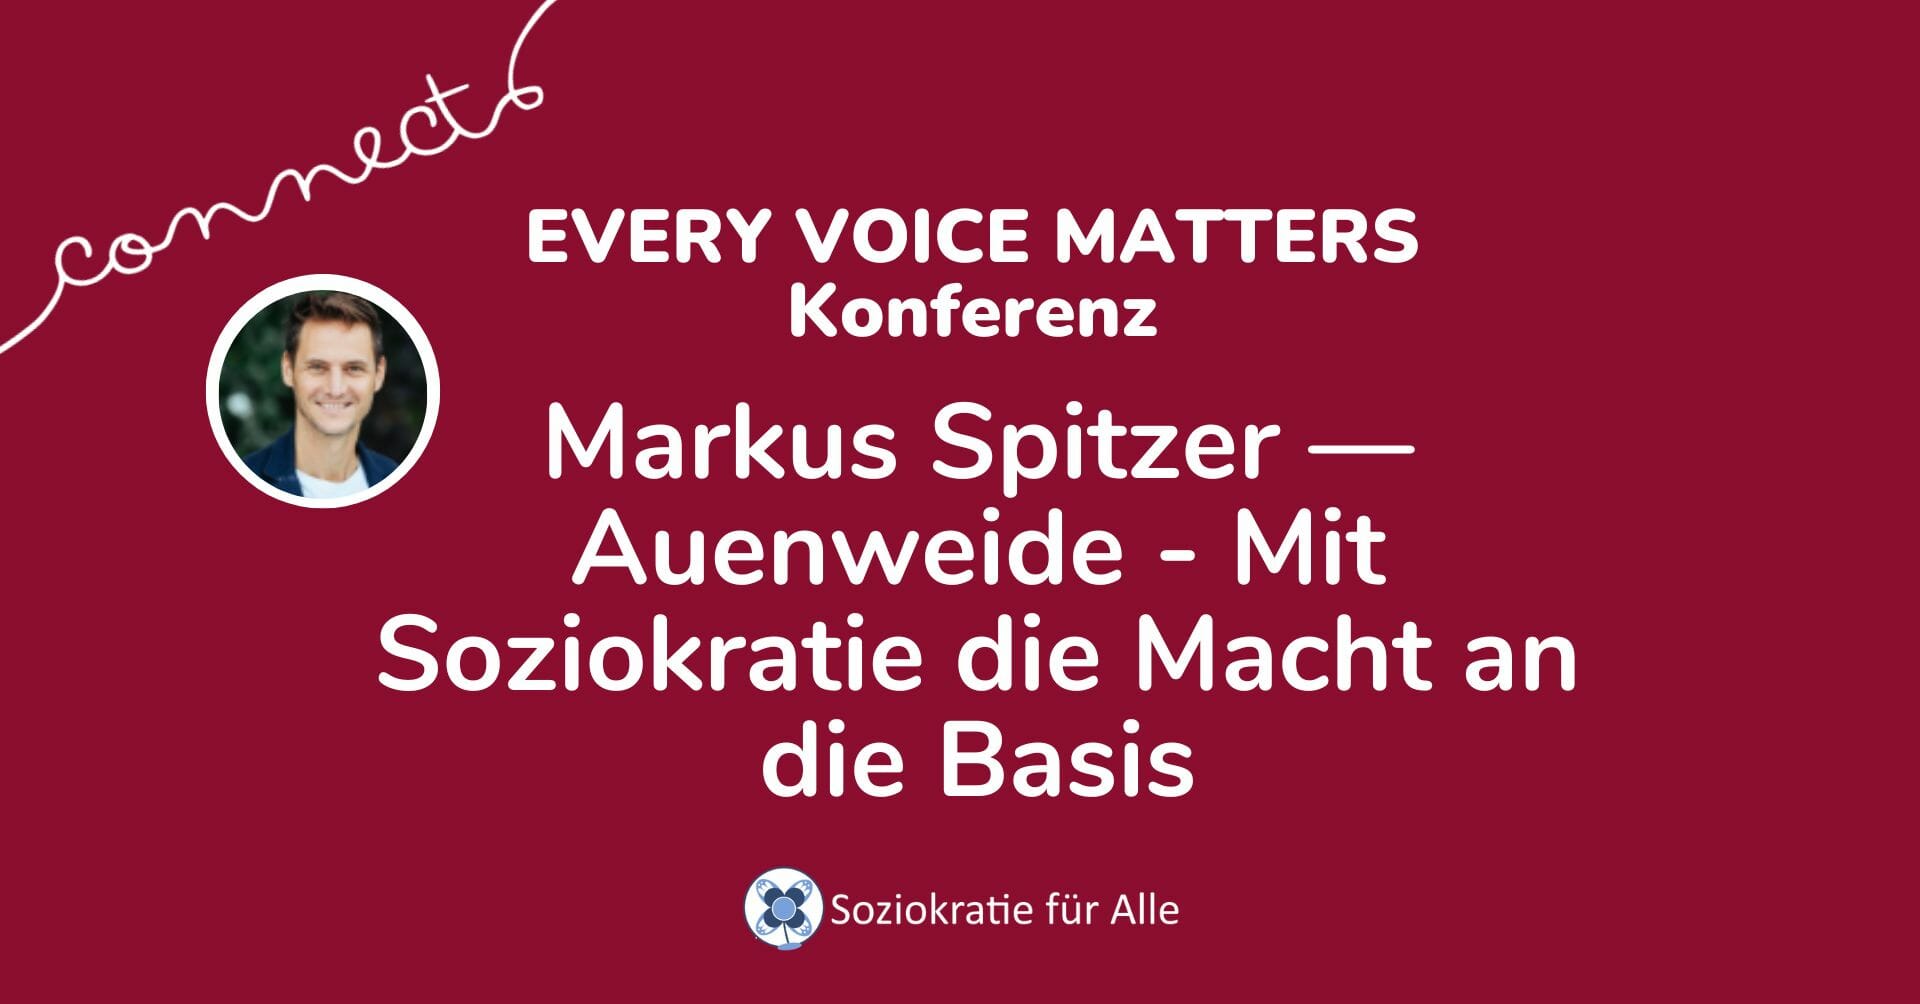 Markus Spitzer —Auenweide – Mit Soziokratie die Macht an die Basis